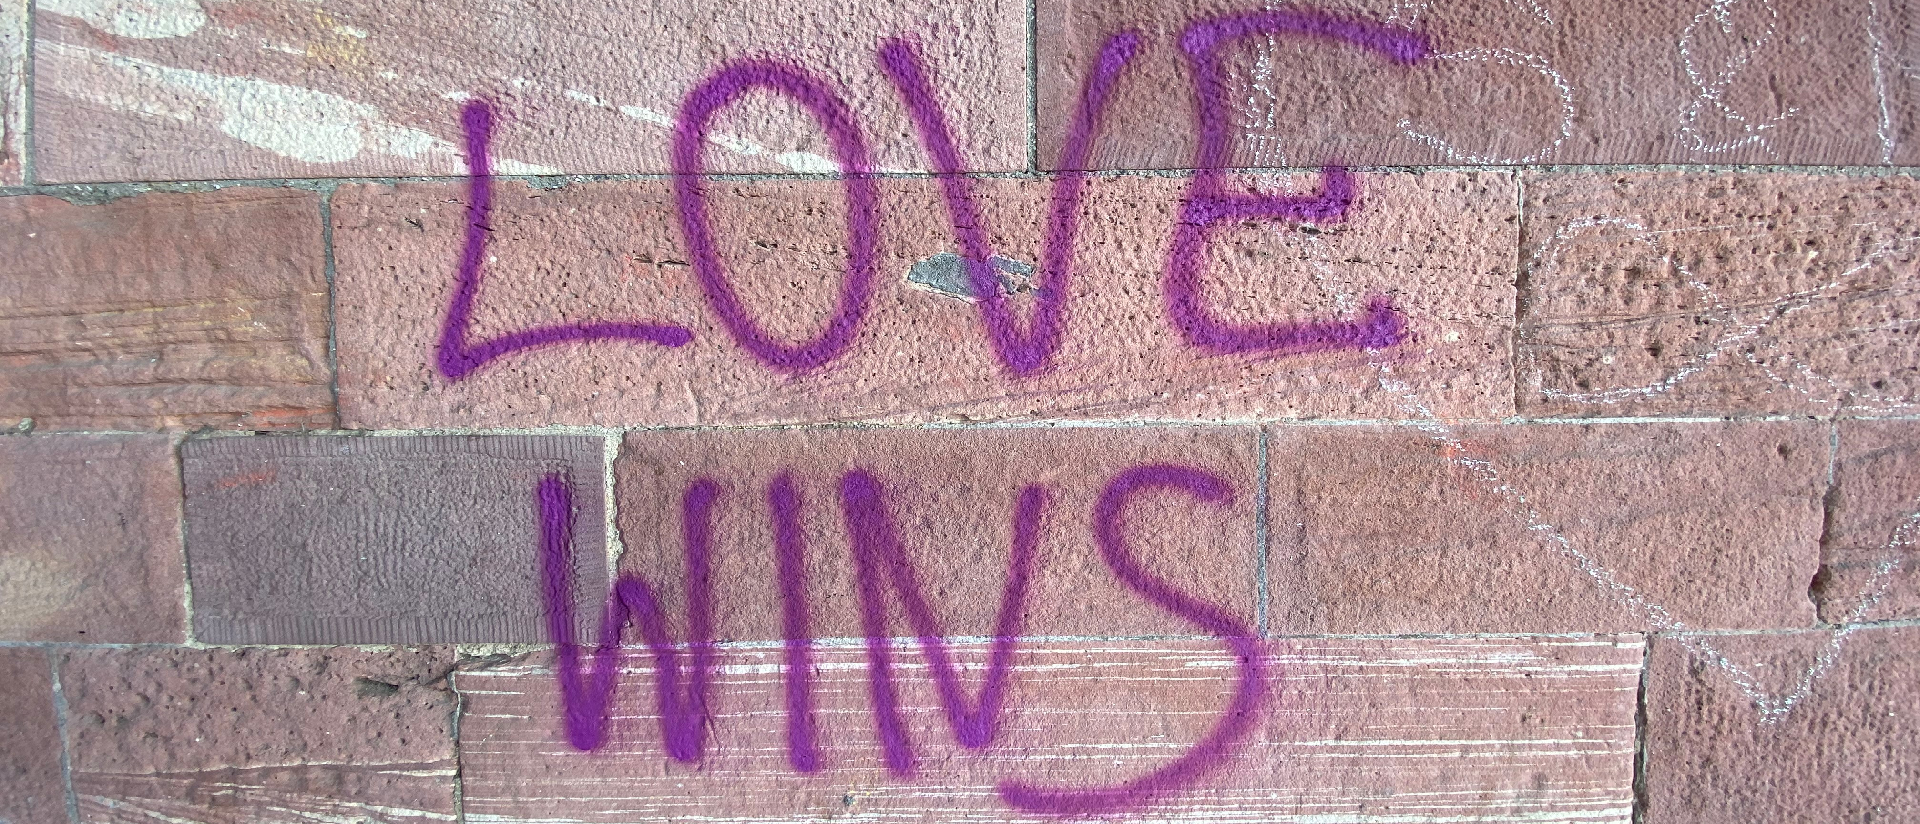 Liebe gewinnt: Aufschrift an einer Mauer.